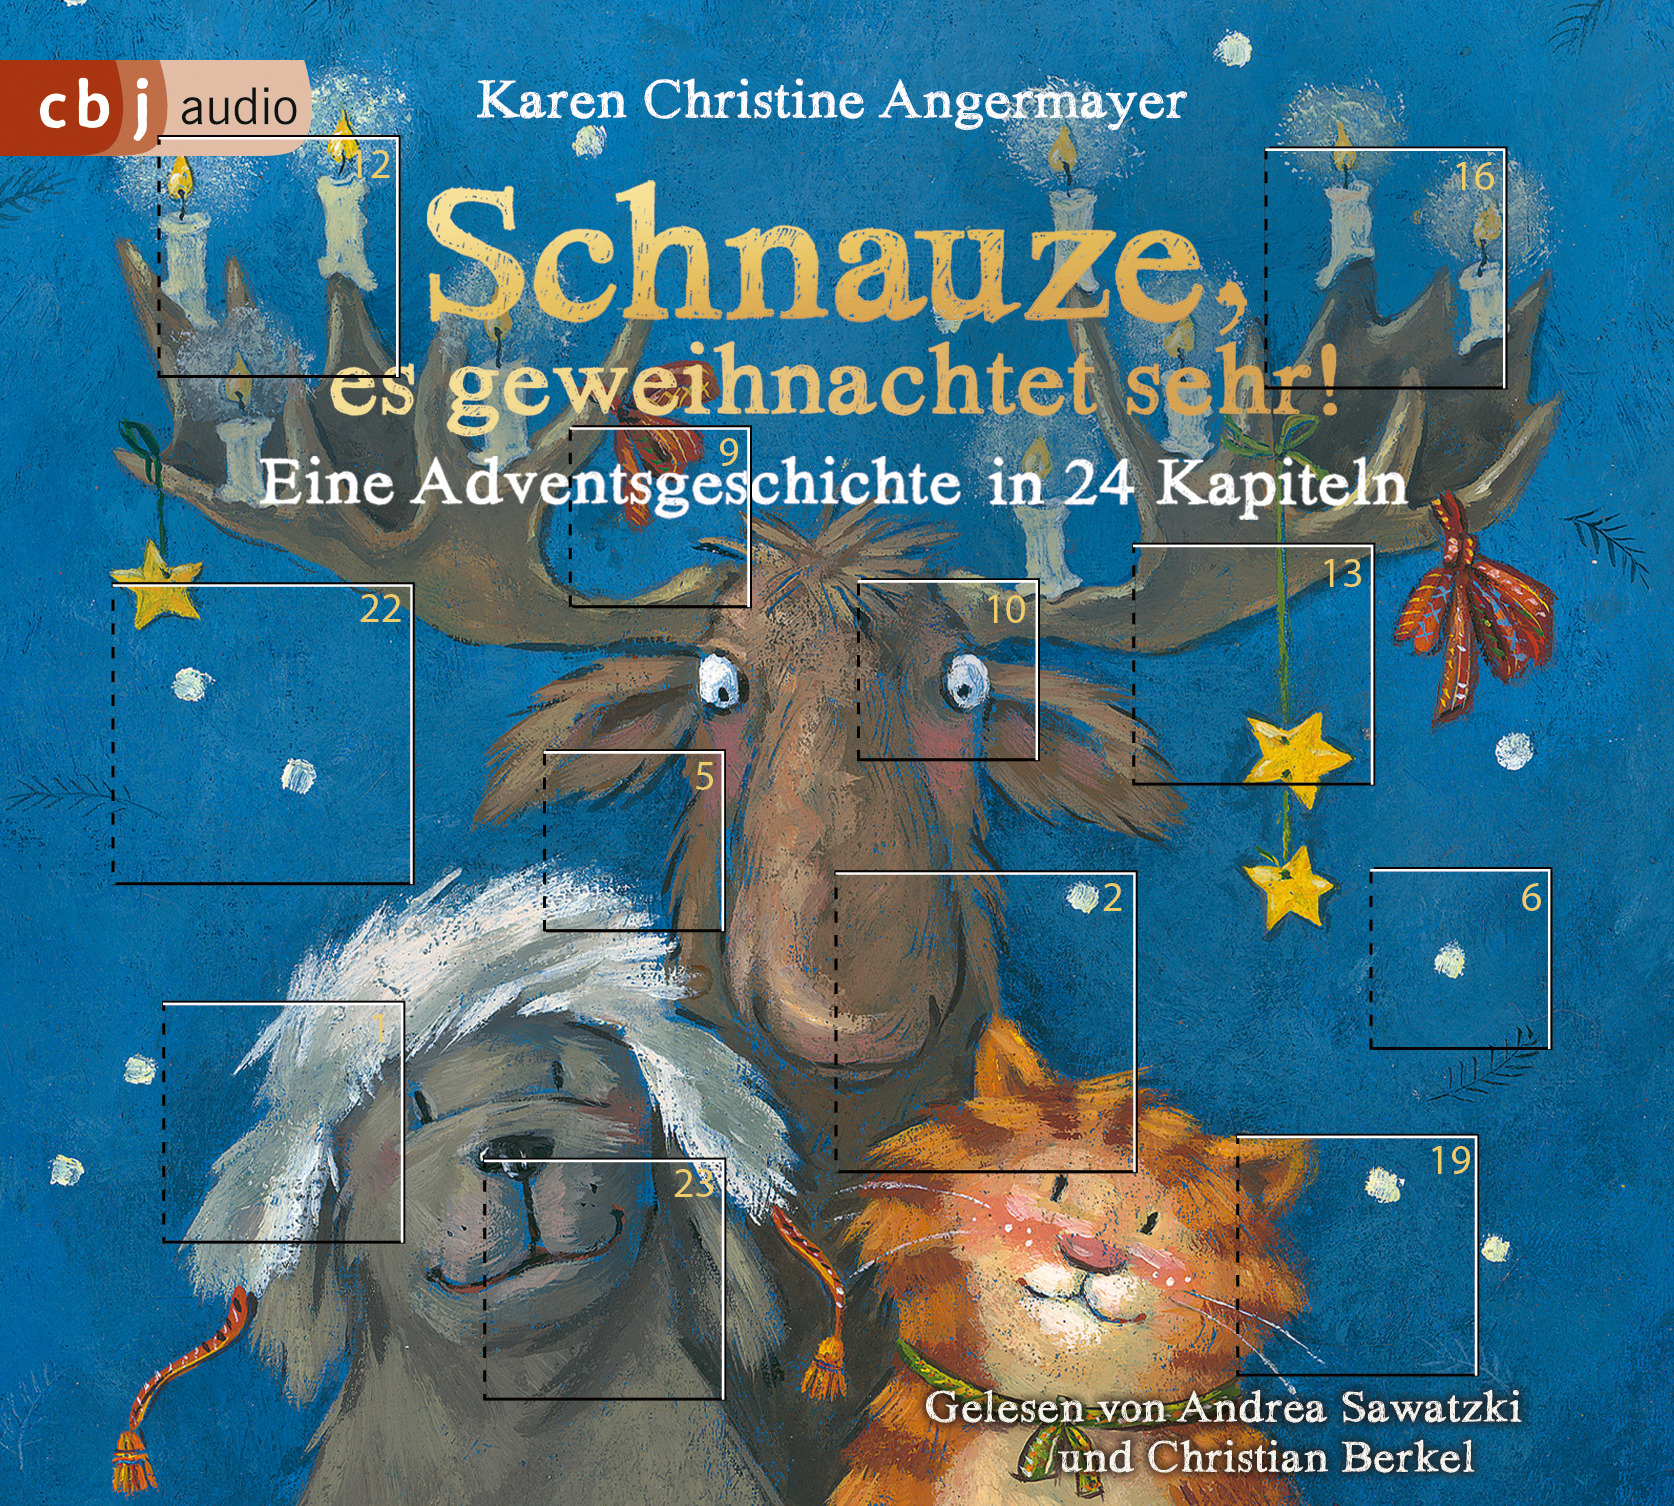 Cover "Schnauze, es geweihnachtet sehr", cbj audio 